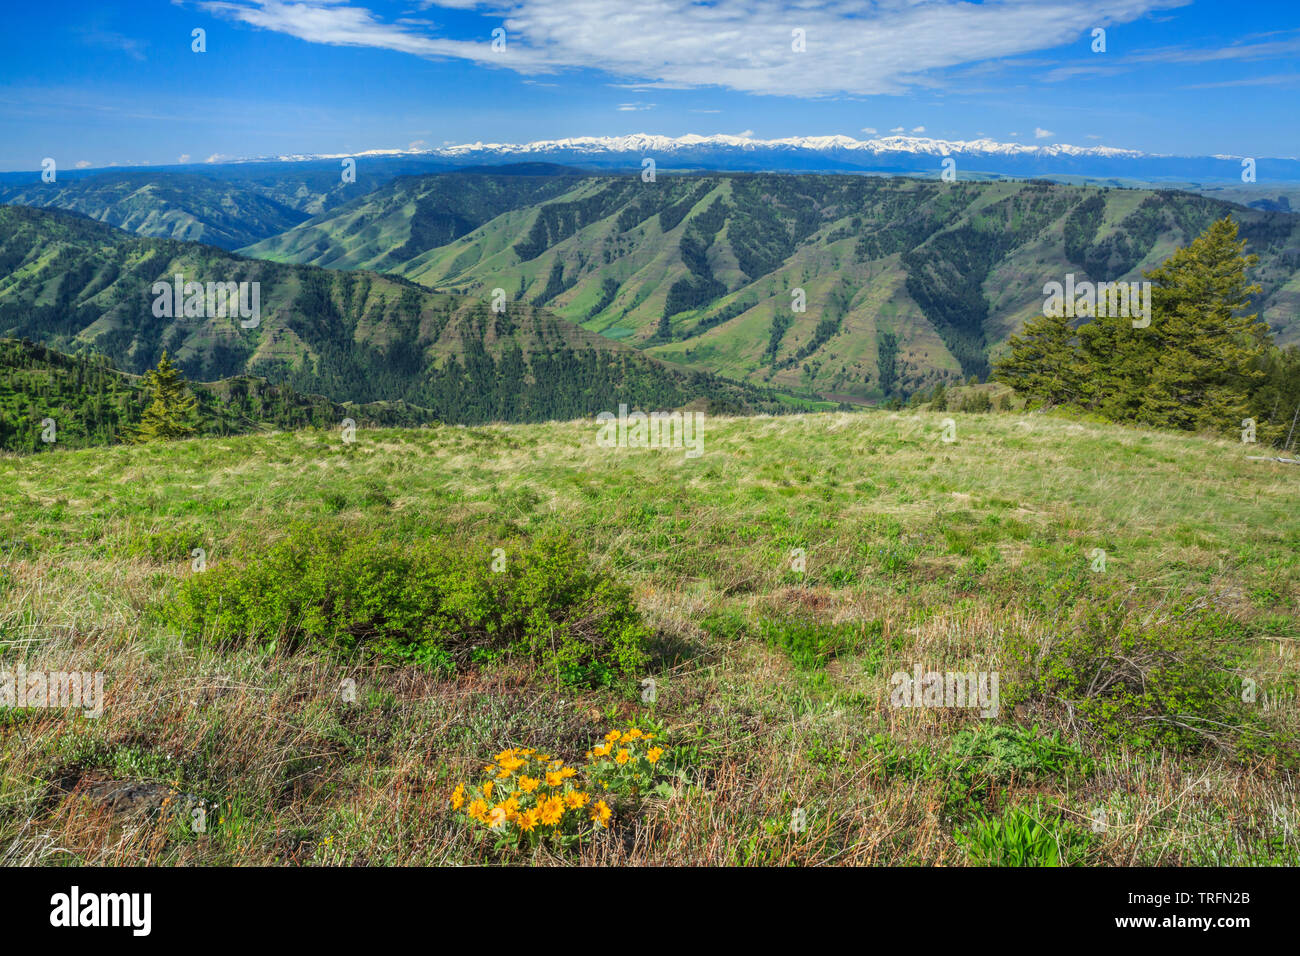 Imnaha valle wallowa e montagne in distanza visto da hat point road vicino a imnaha, Oregon Foto Stock